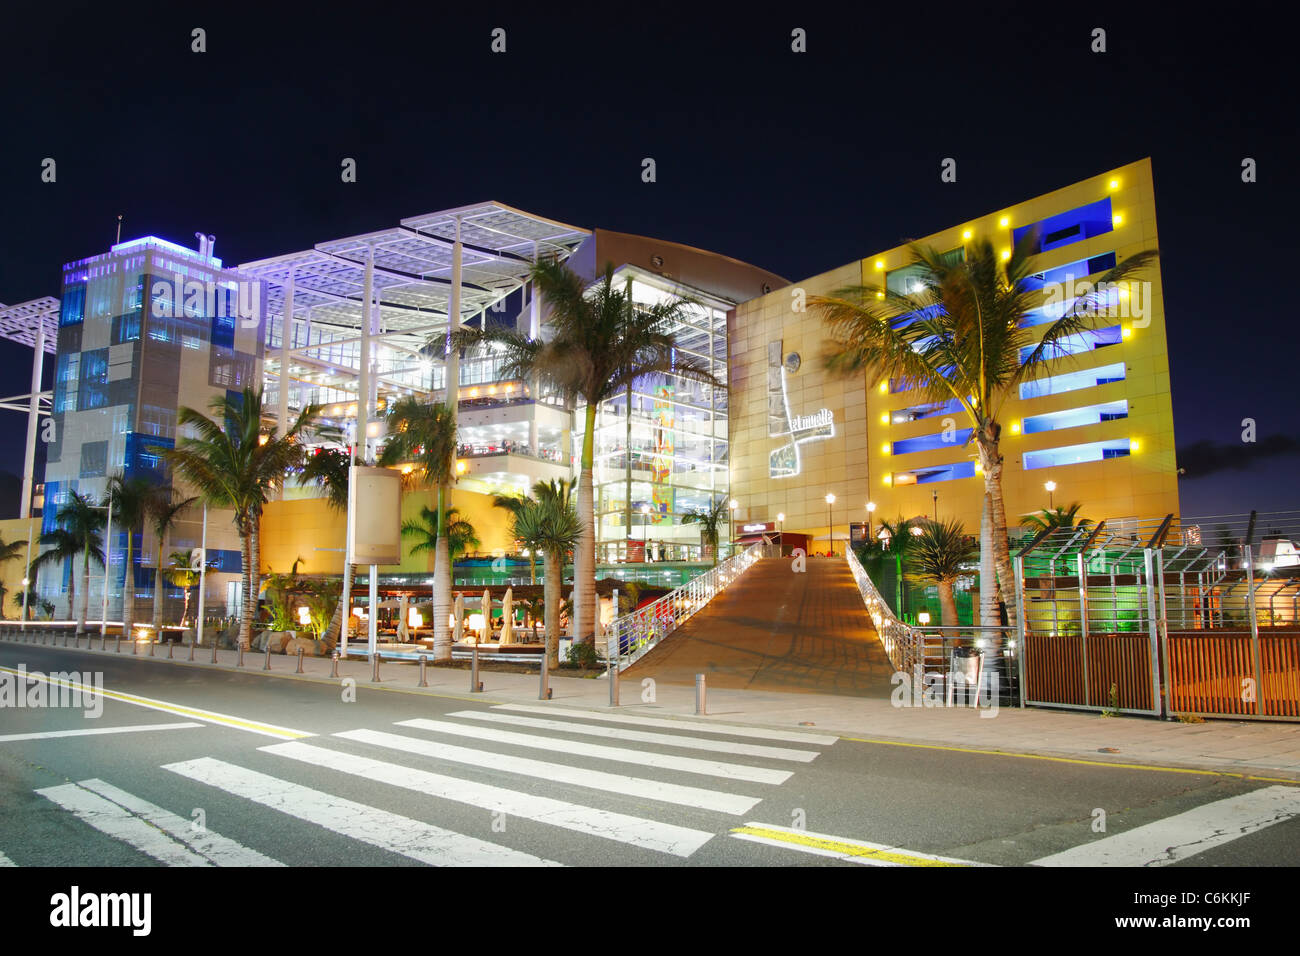 Centro Comercial El Muelle near parque Santa Catalina in Las Palmas on Gran  Canaria Stock Photo - Alamy